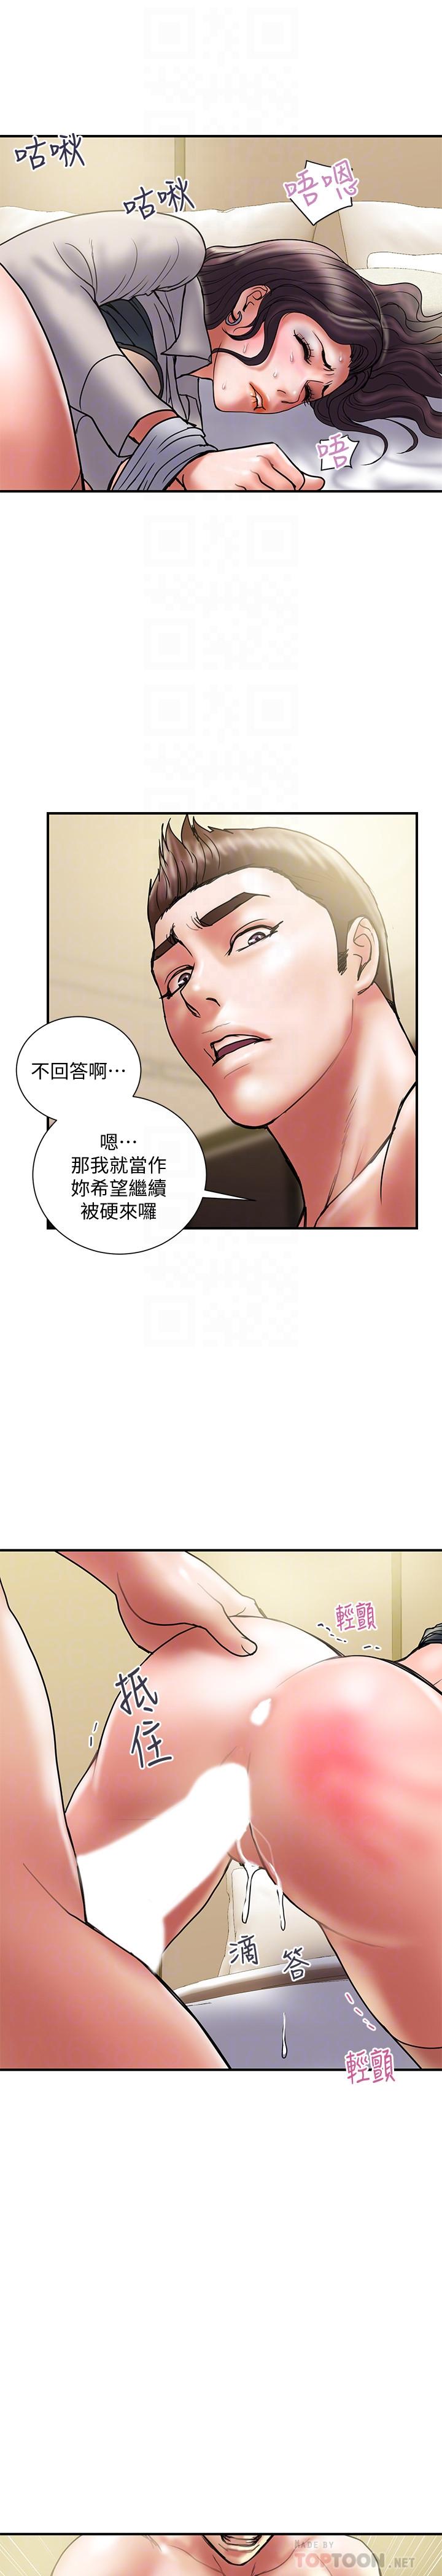 韩国污漫画 計劃出軌 第37话-屈辱与快感交错 10